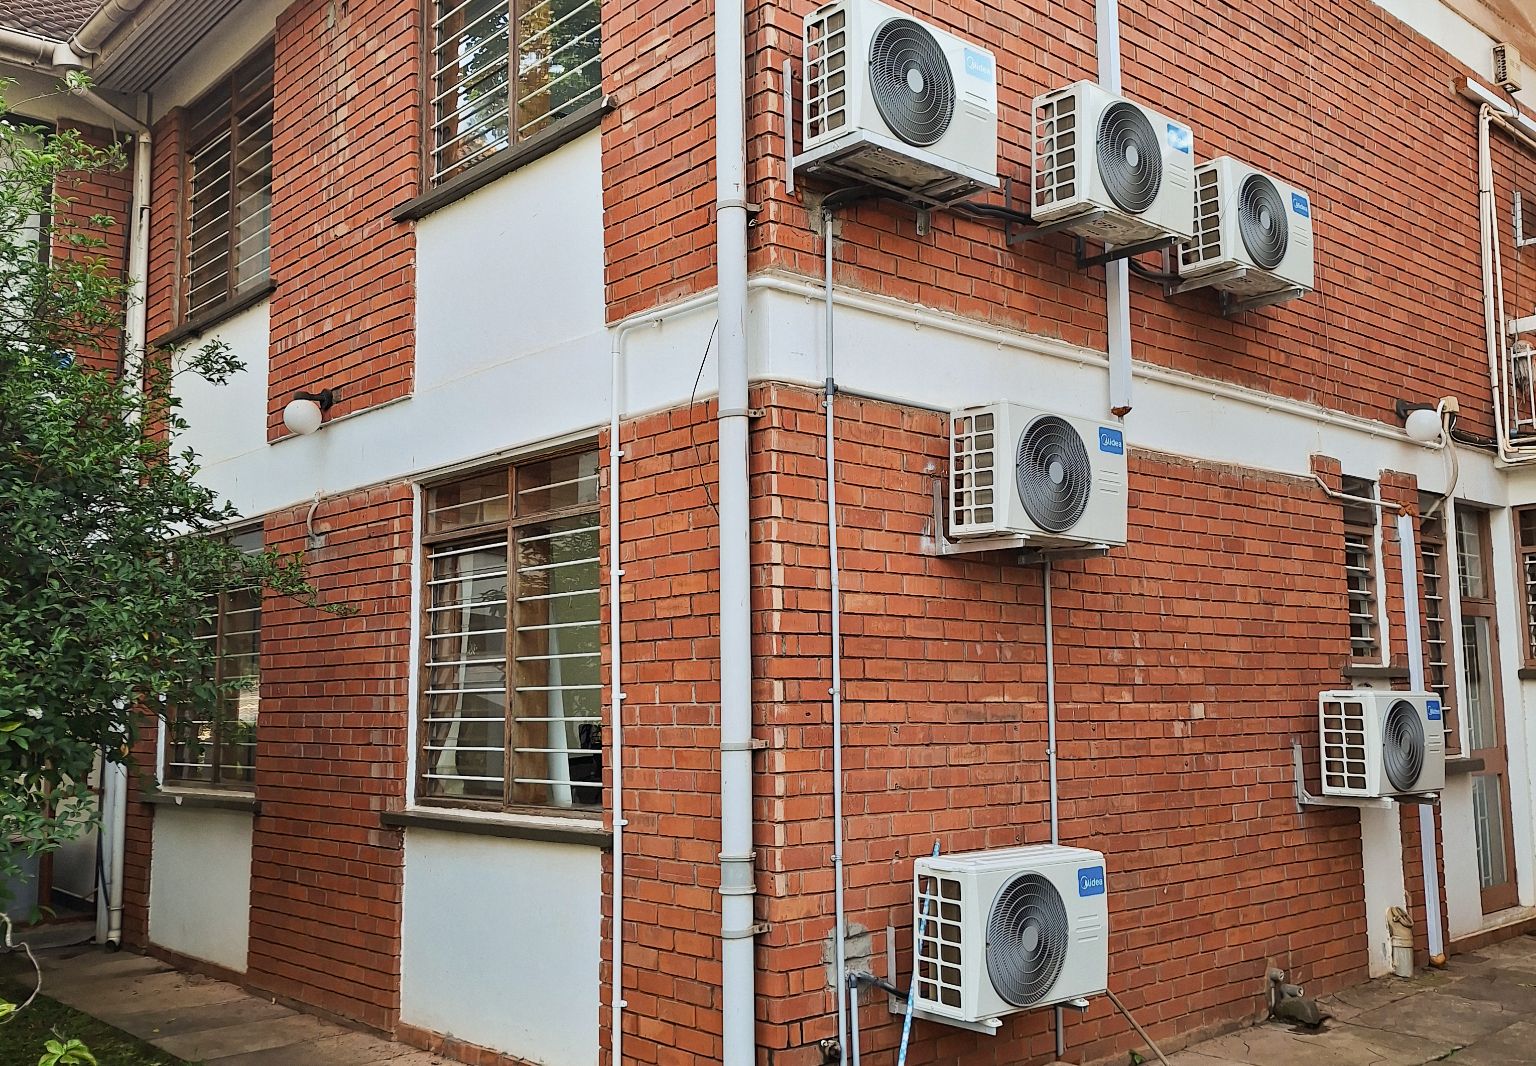 Foto: Ein Backsteingebäude von außen mit Klimaanlagen